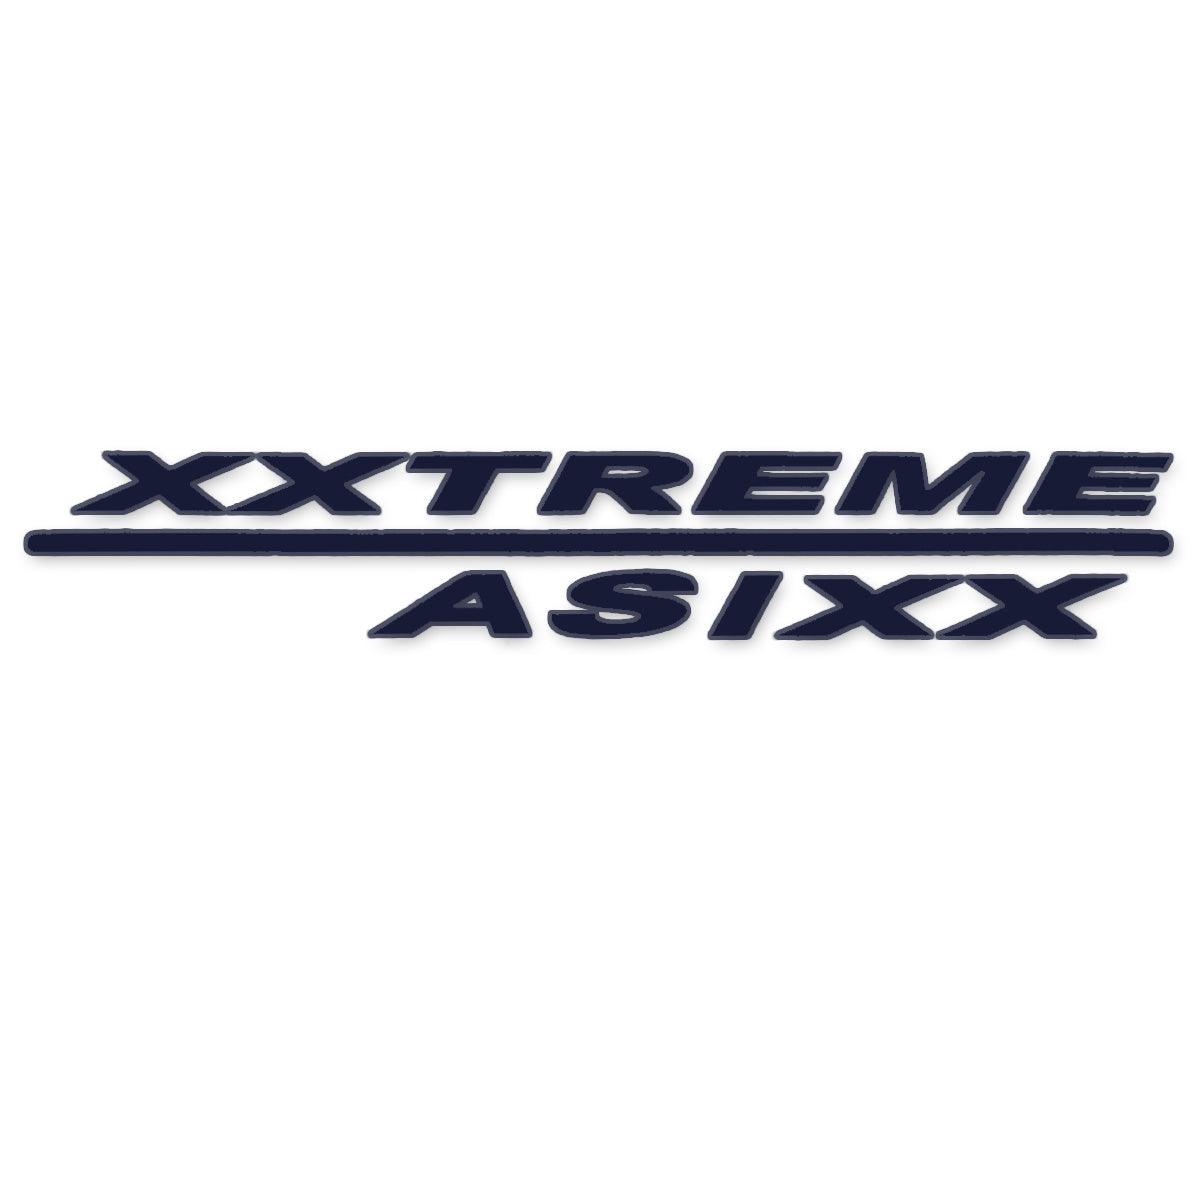 XXTreme Asixx Buggy Vinyl Sticker Set - Kiteshop.com